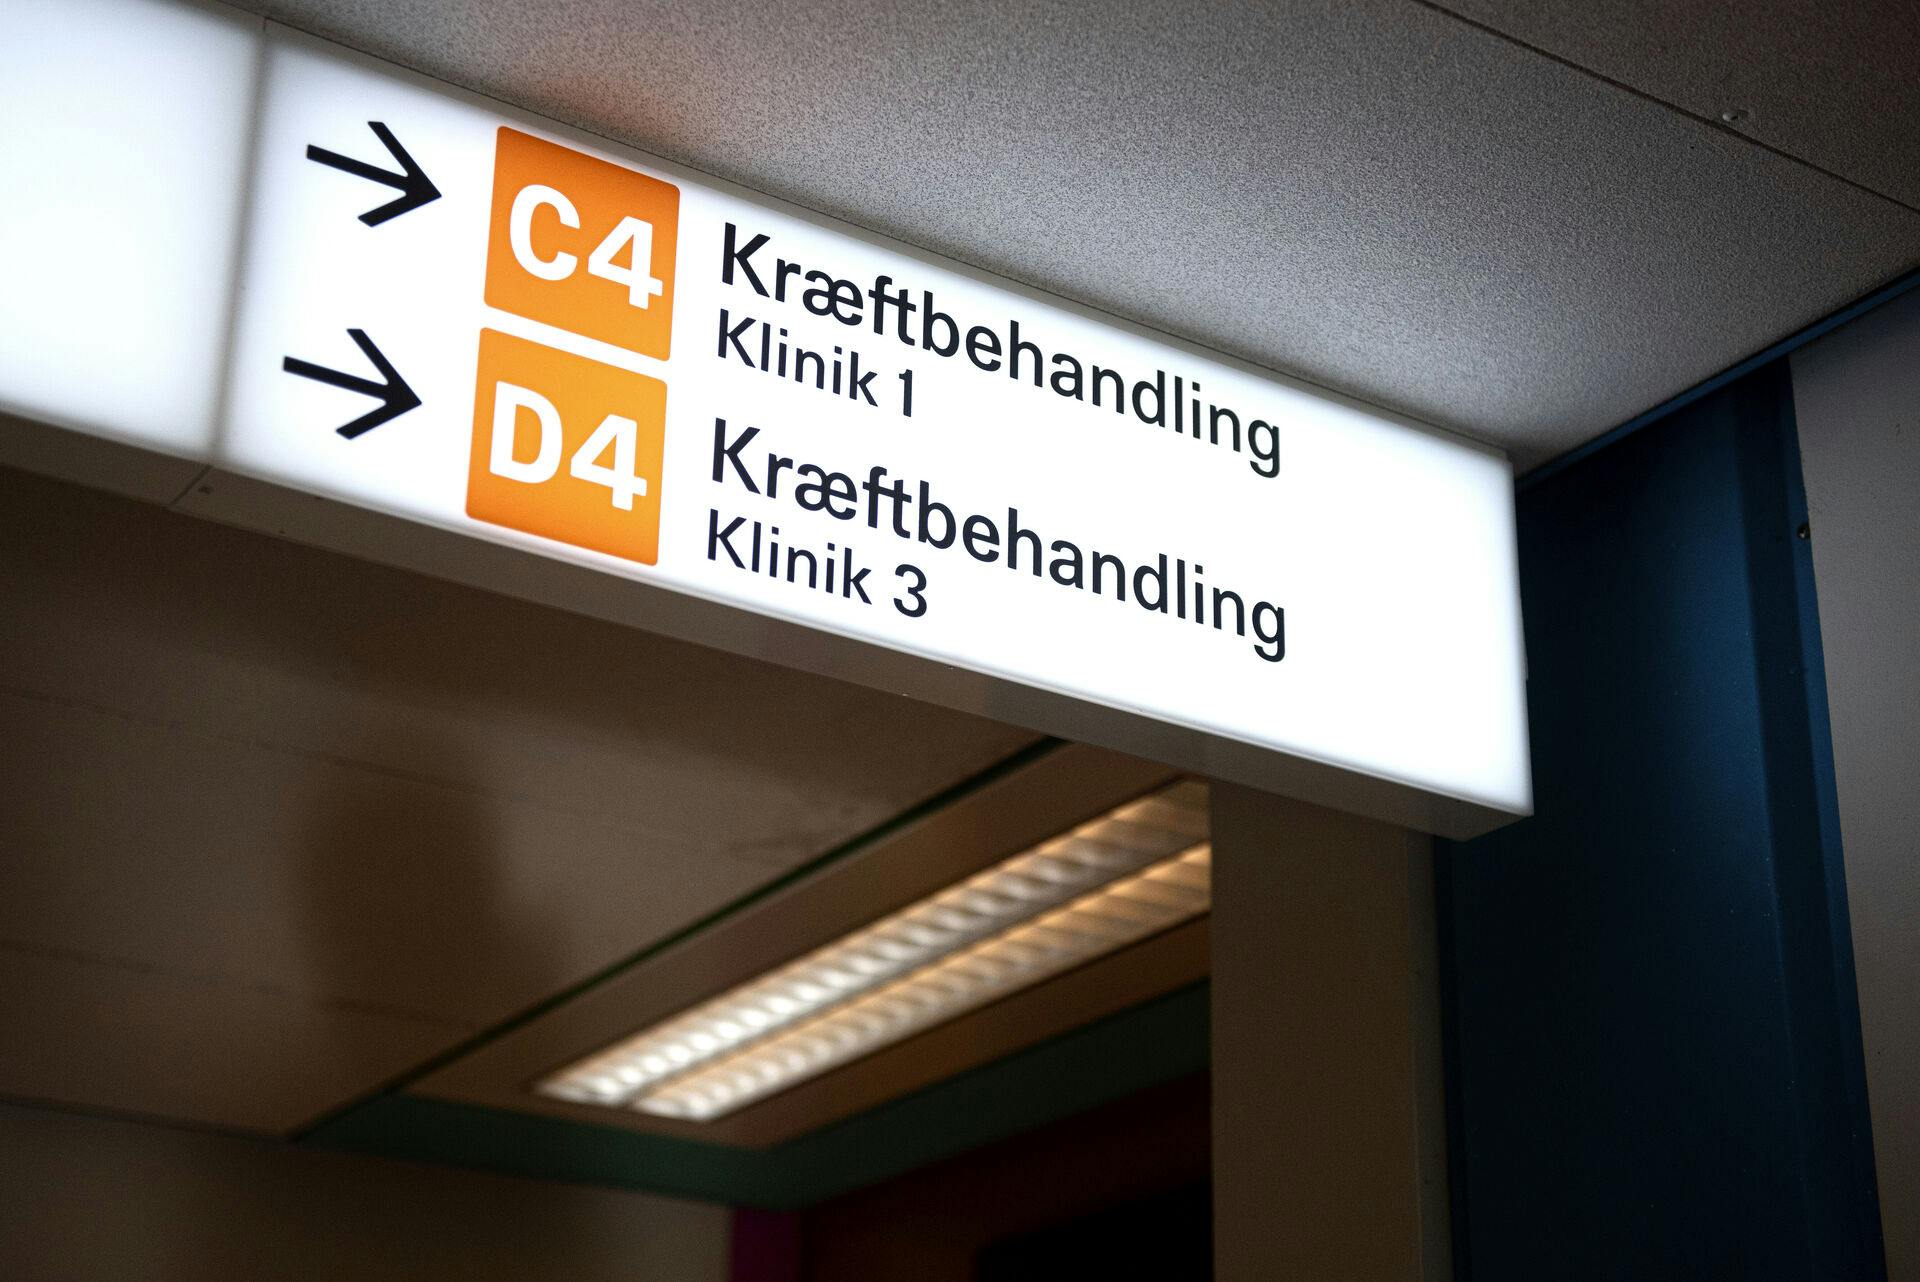 Den første patient har søgt om erstatning i forbindelse med kræftsagen fra Region Midtjylland.